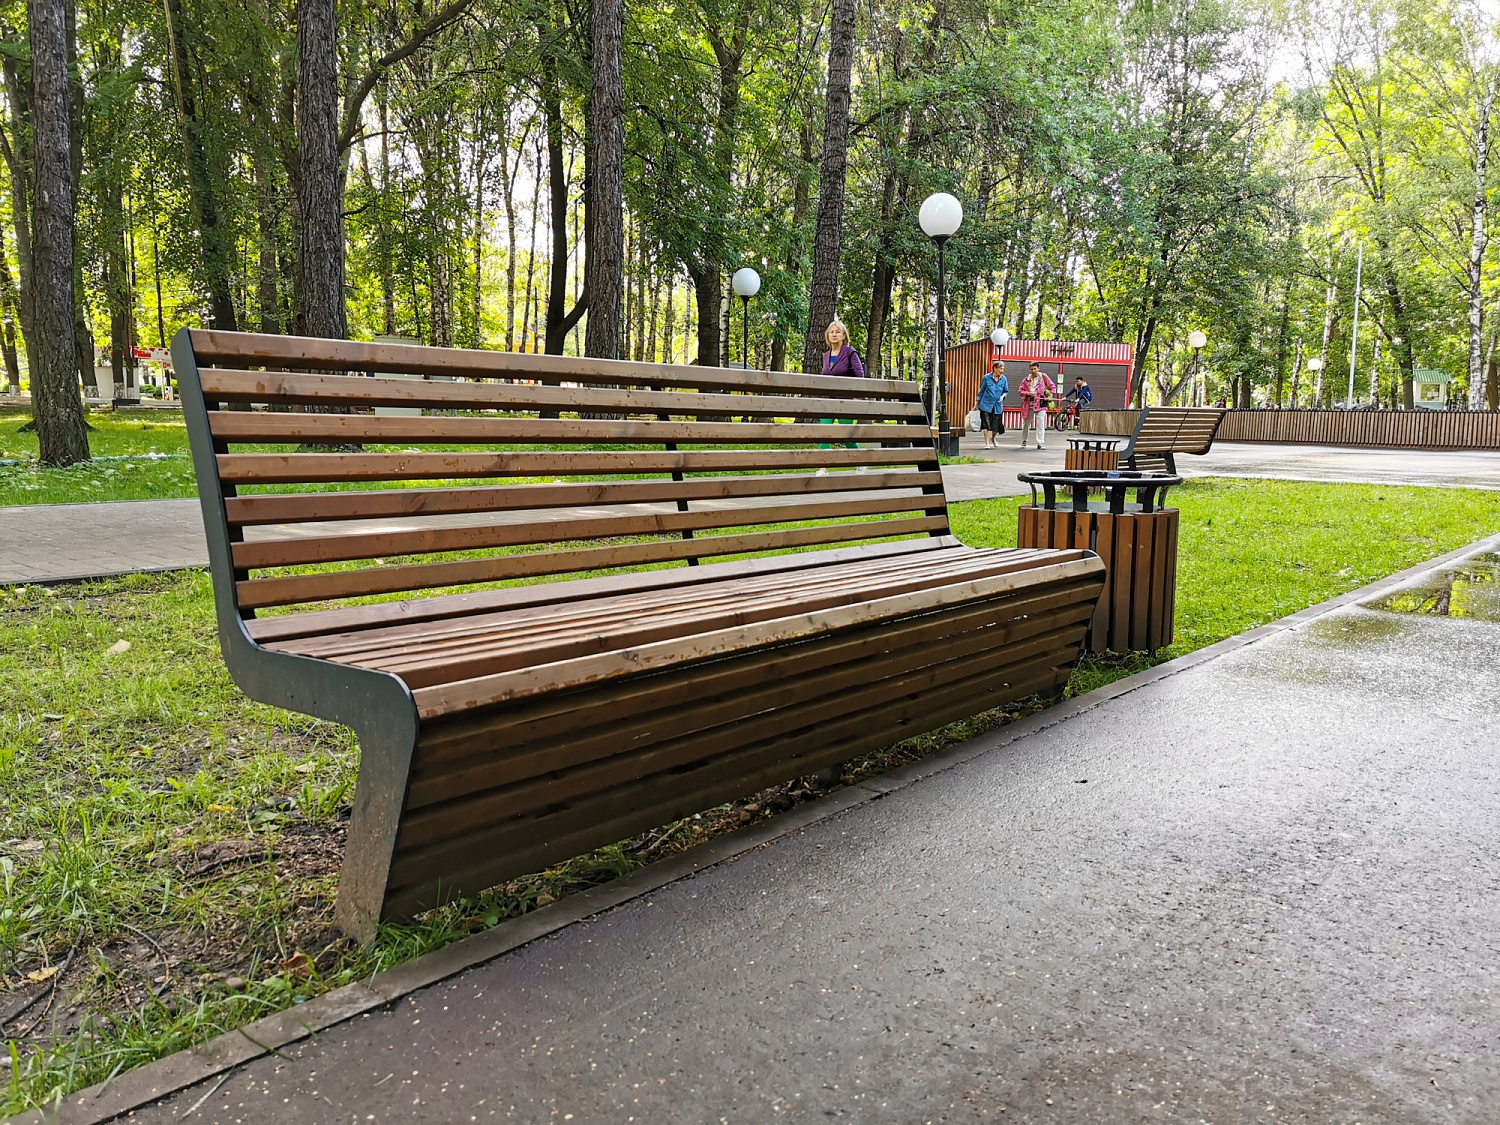 Юбилейный парк, Ярославль, Ярославская область, 2020 г. - фото от Punto Group